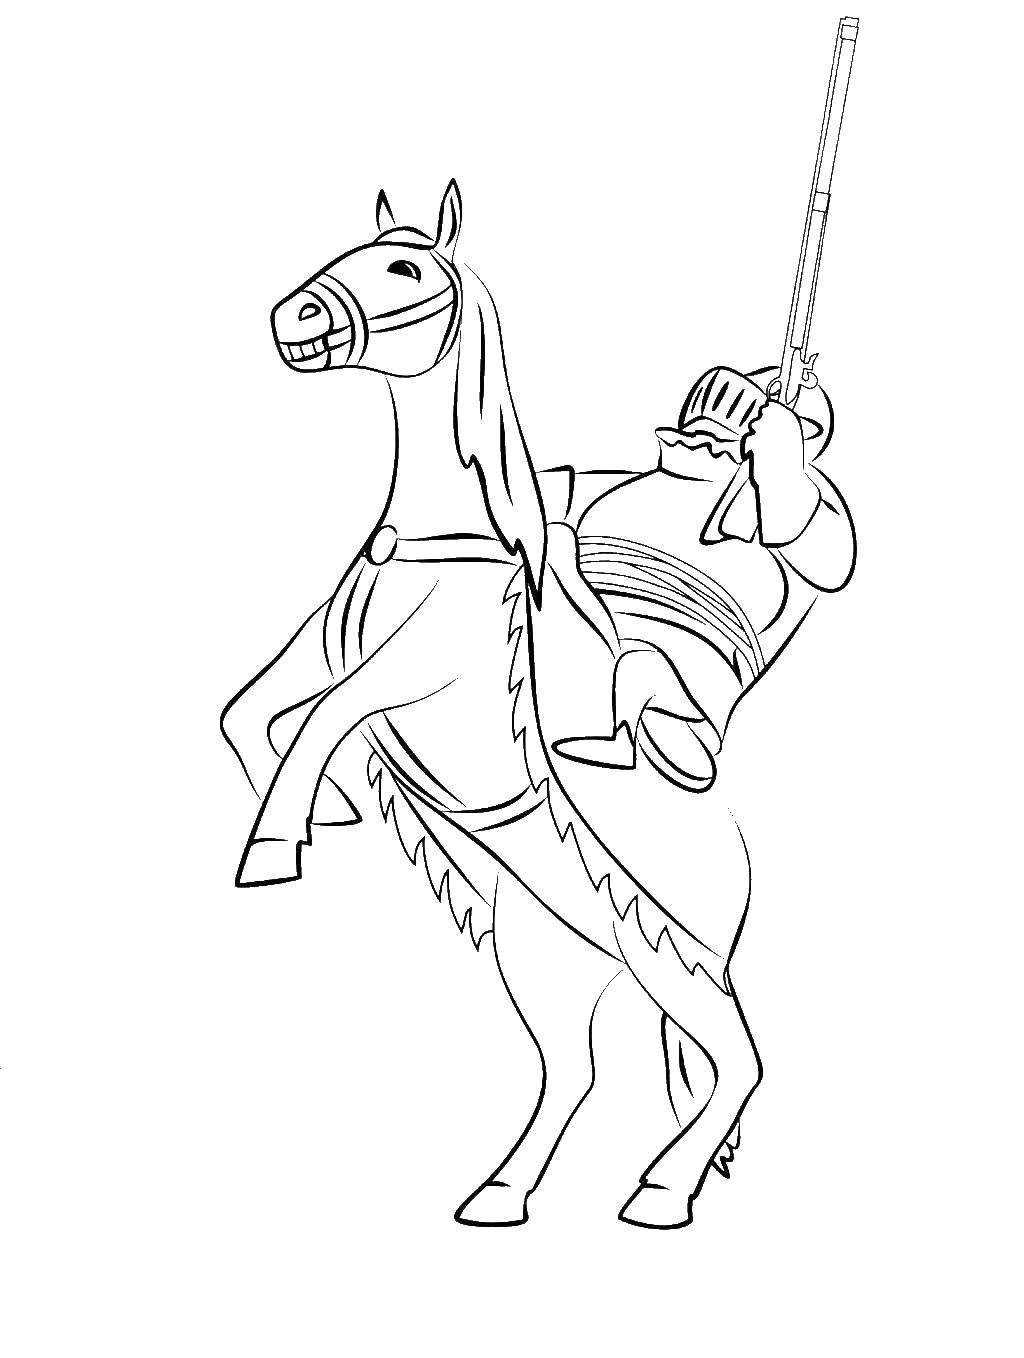 Раскраски с рыцарями, конями и воинами для мальчиков (король)